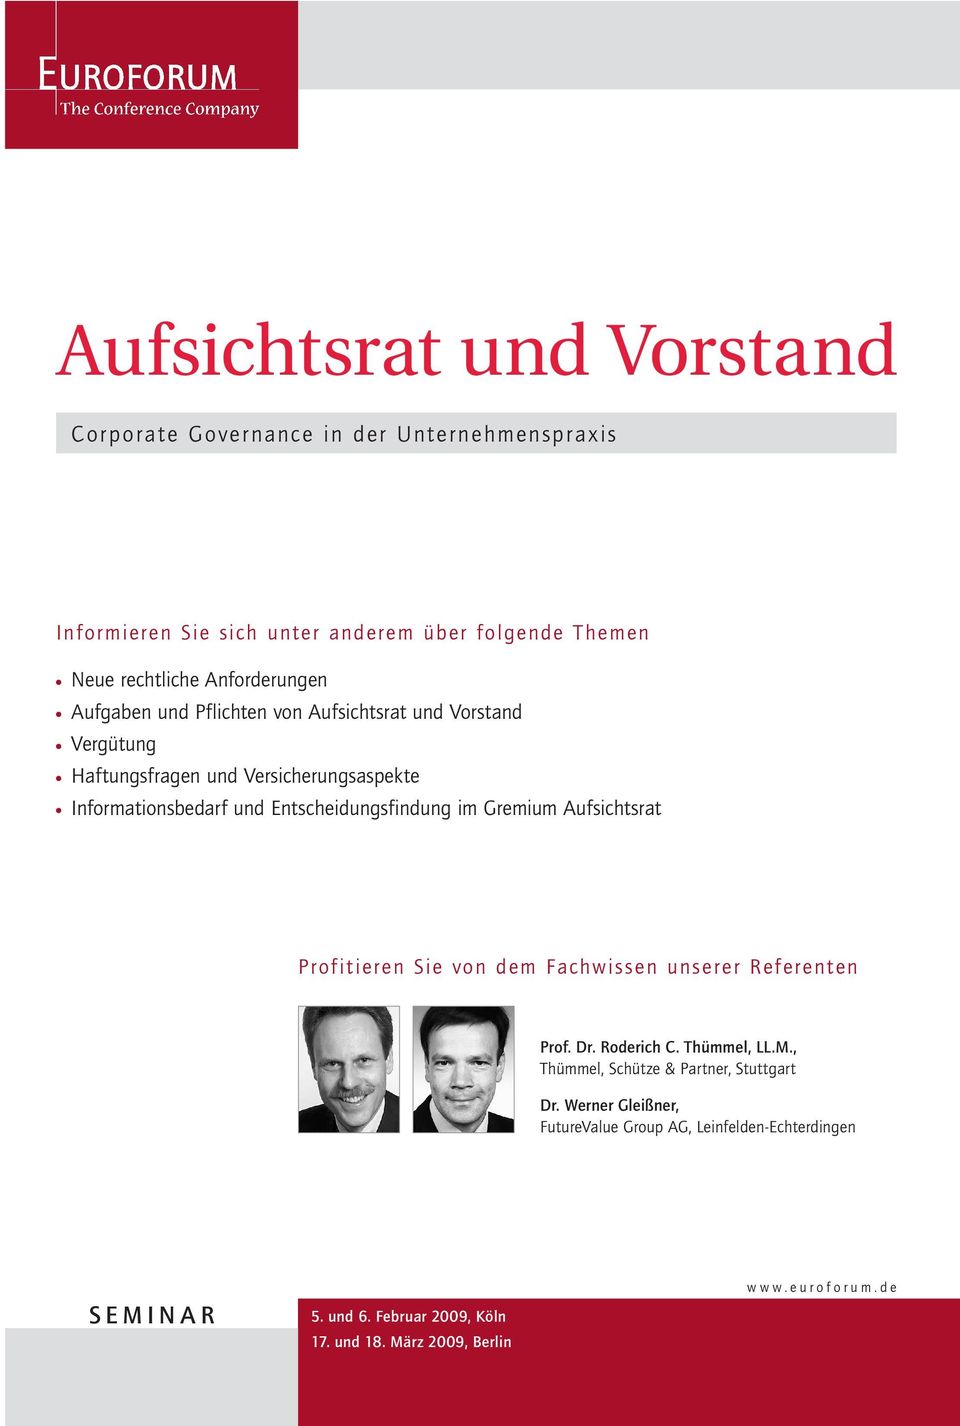 Entscheidungsfindung im Gremium Aufsichtsrat Profitieren Sie von dem Fachwissen unserer Referenten, Thümmel, Schütze & Partner, Stuttgart Dr.